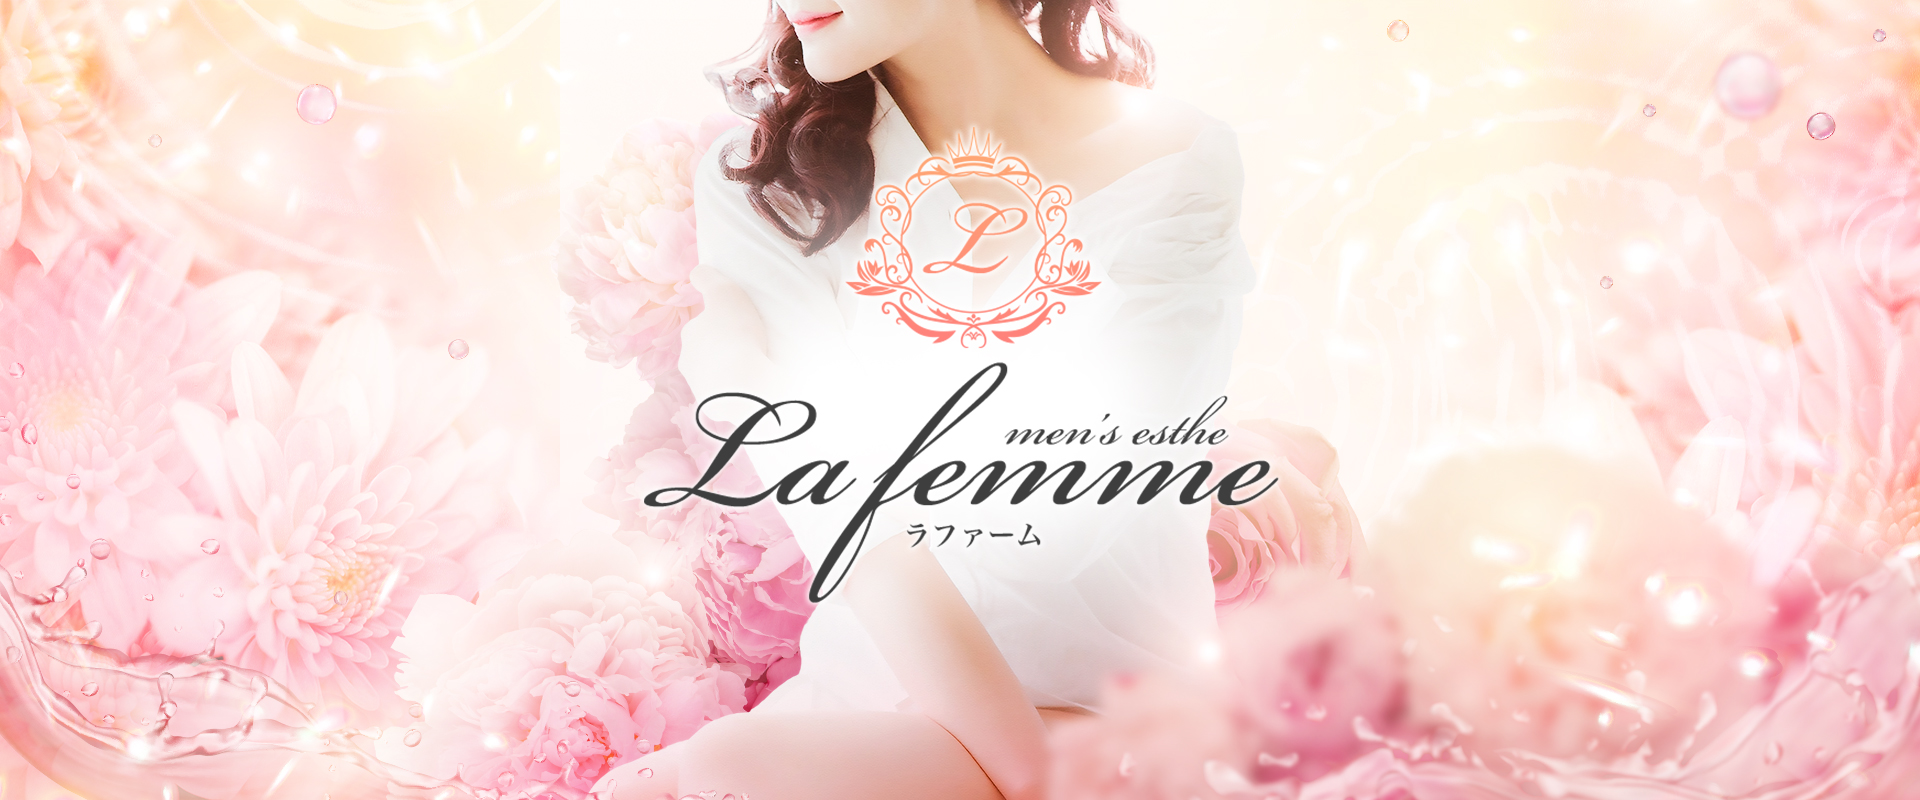 古河 久喜 メンズエステ『La　femme(ラファーム)』